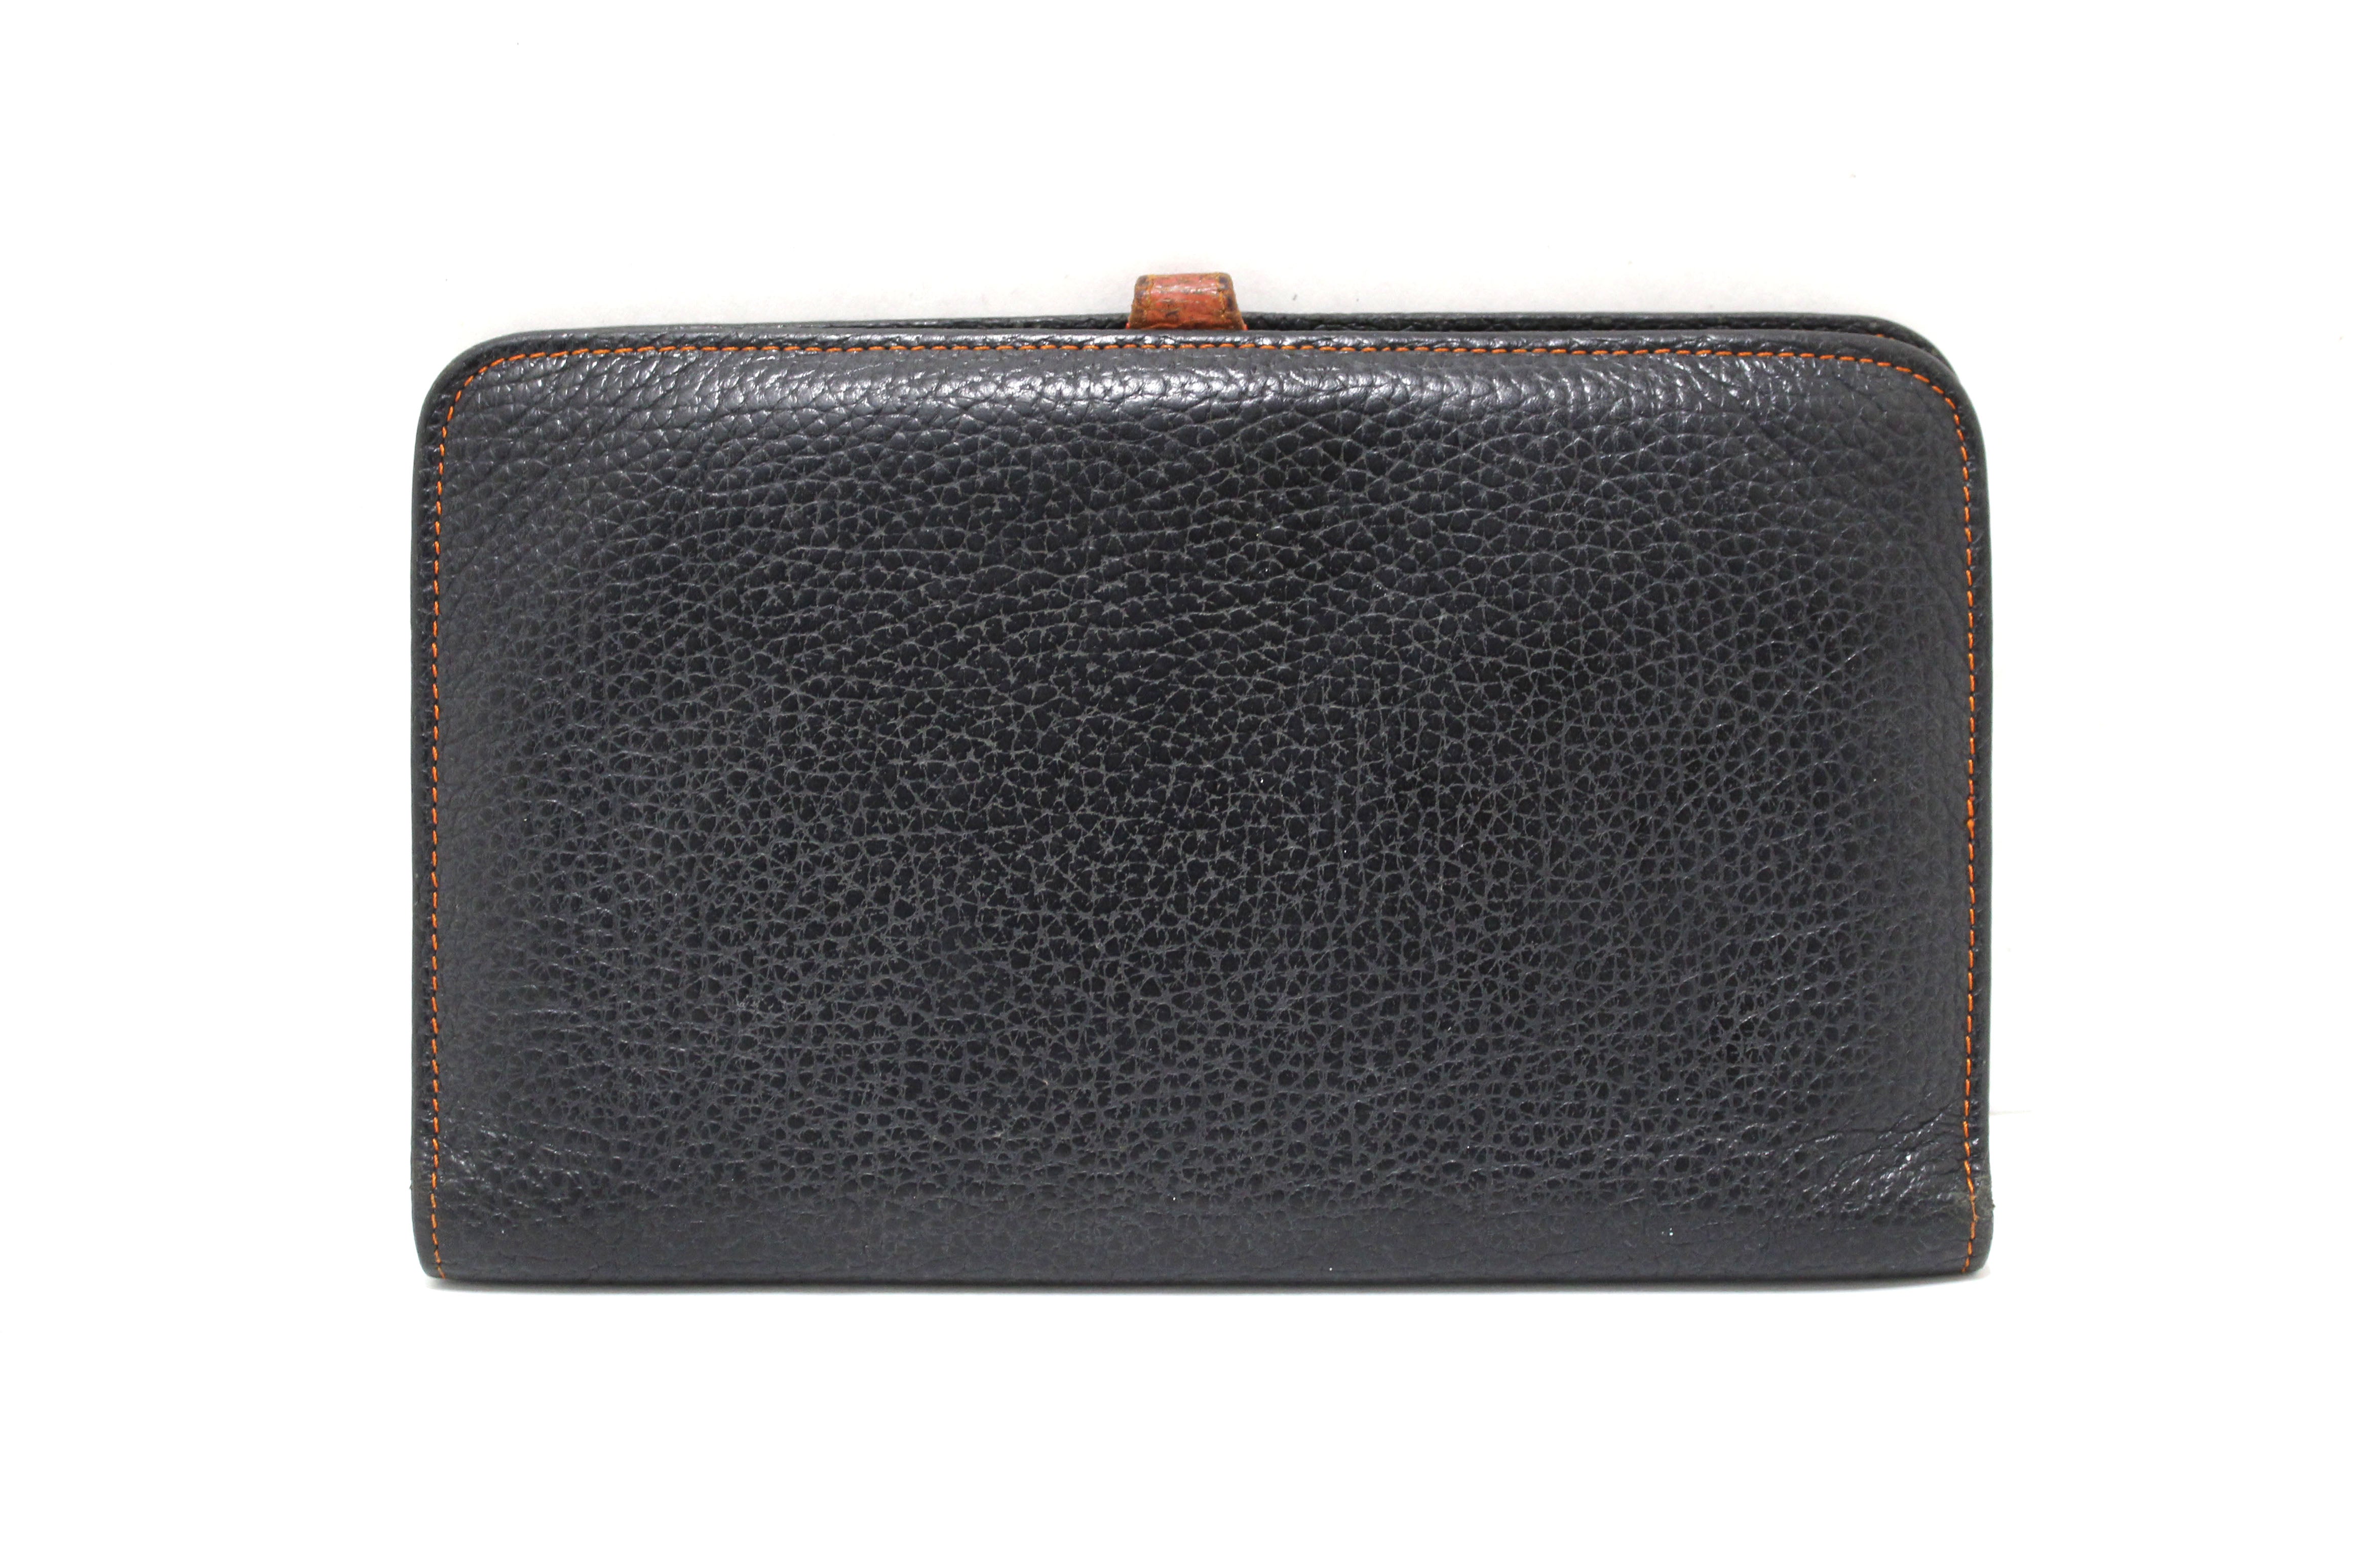 Hermès Orange Togo Leather Dogon Wallet 232H857 – Bagriculture